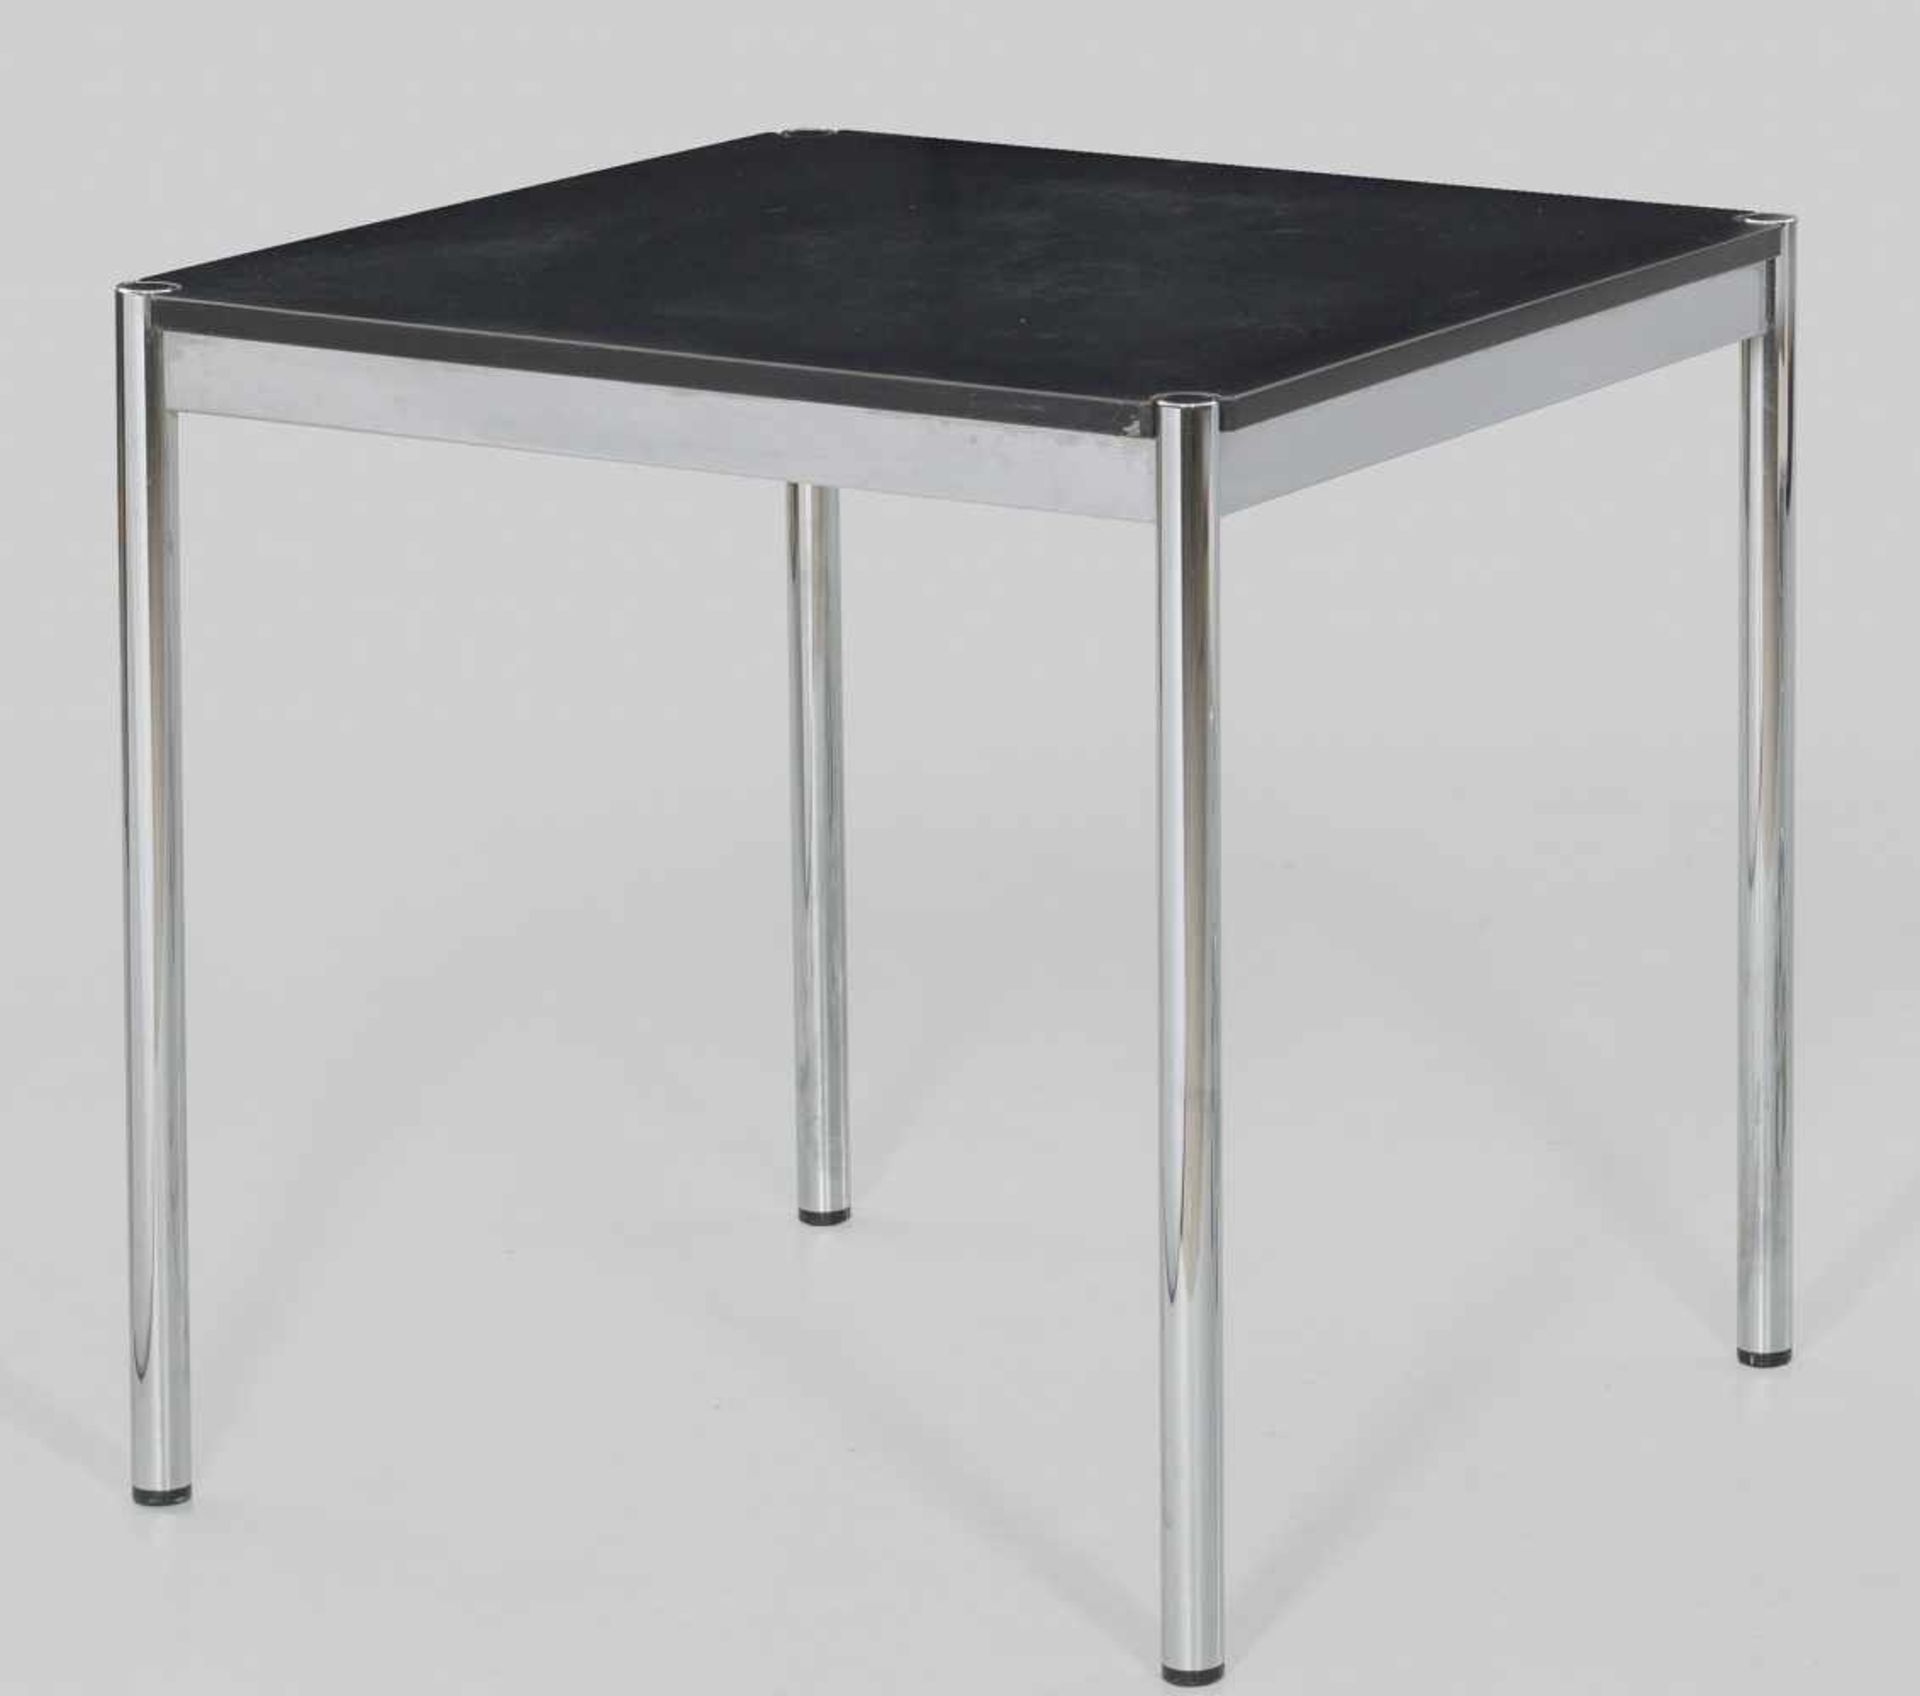 Tisch von USM HallerVerchromtes Metall sowie schwarz beschichtetes Holz. Kräftige Rundstäbe als